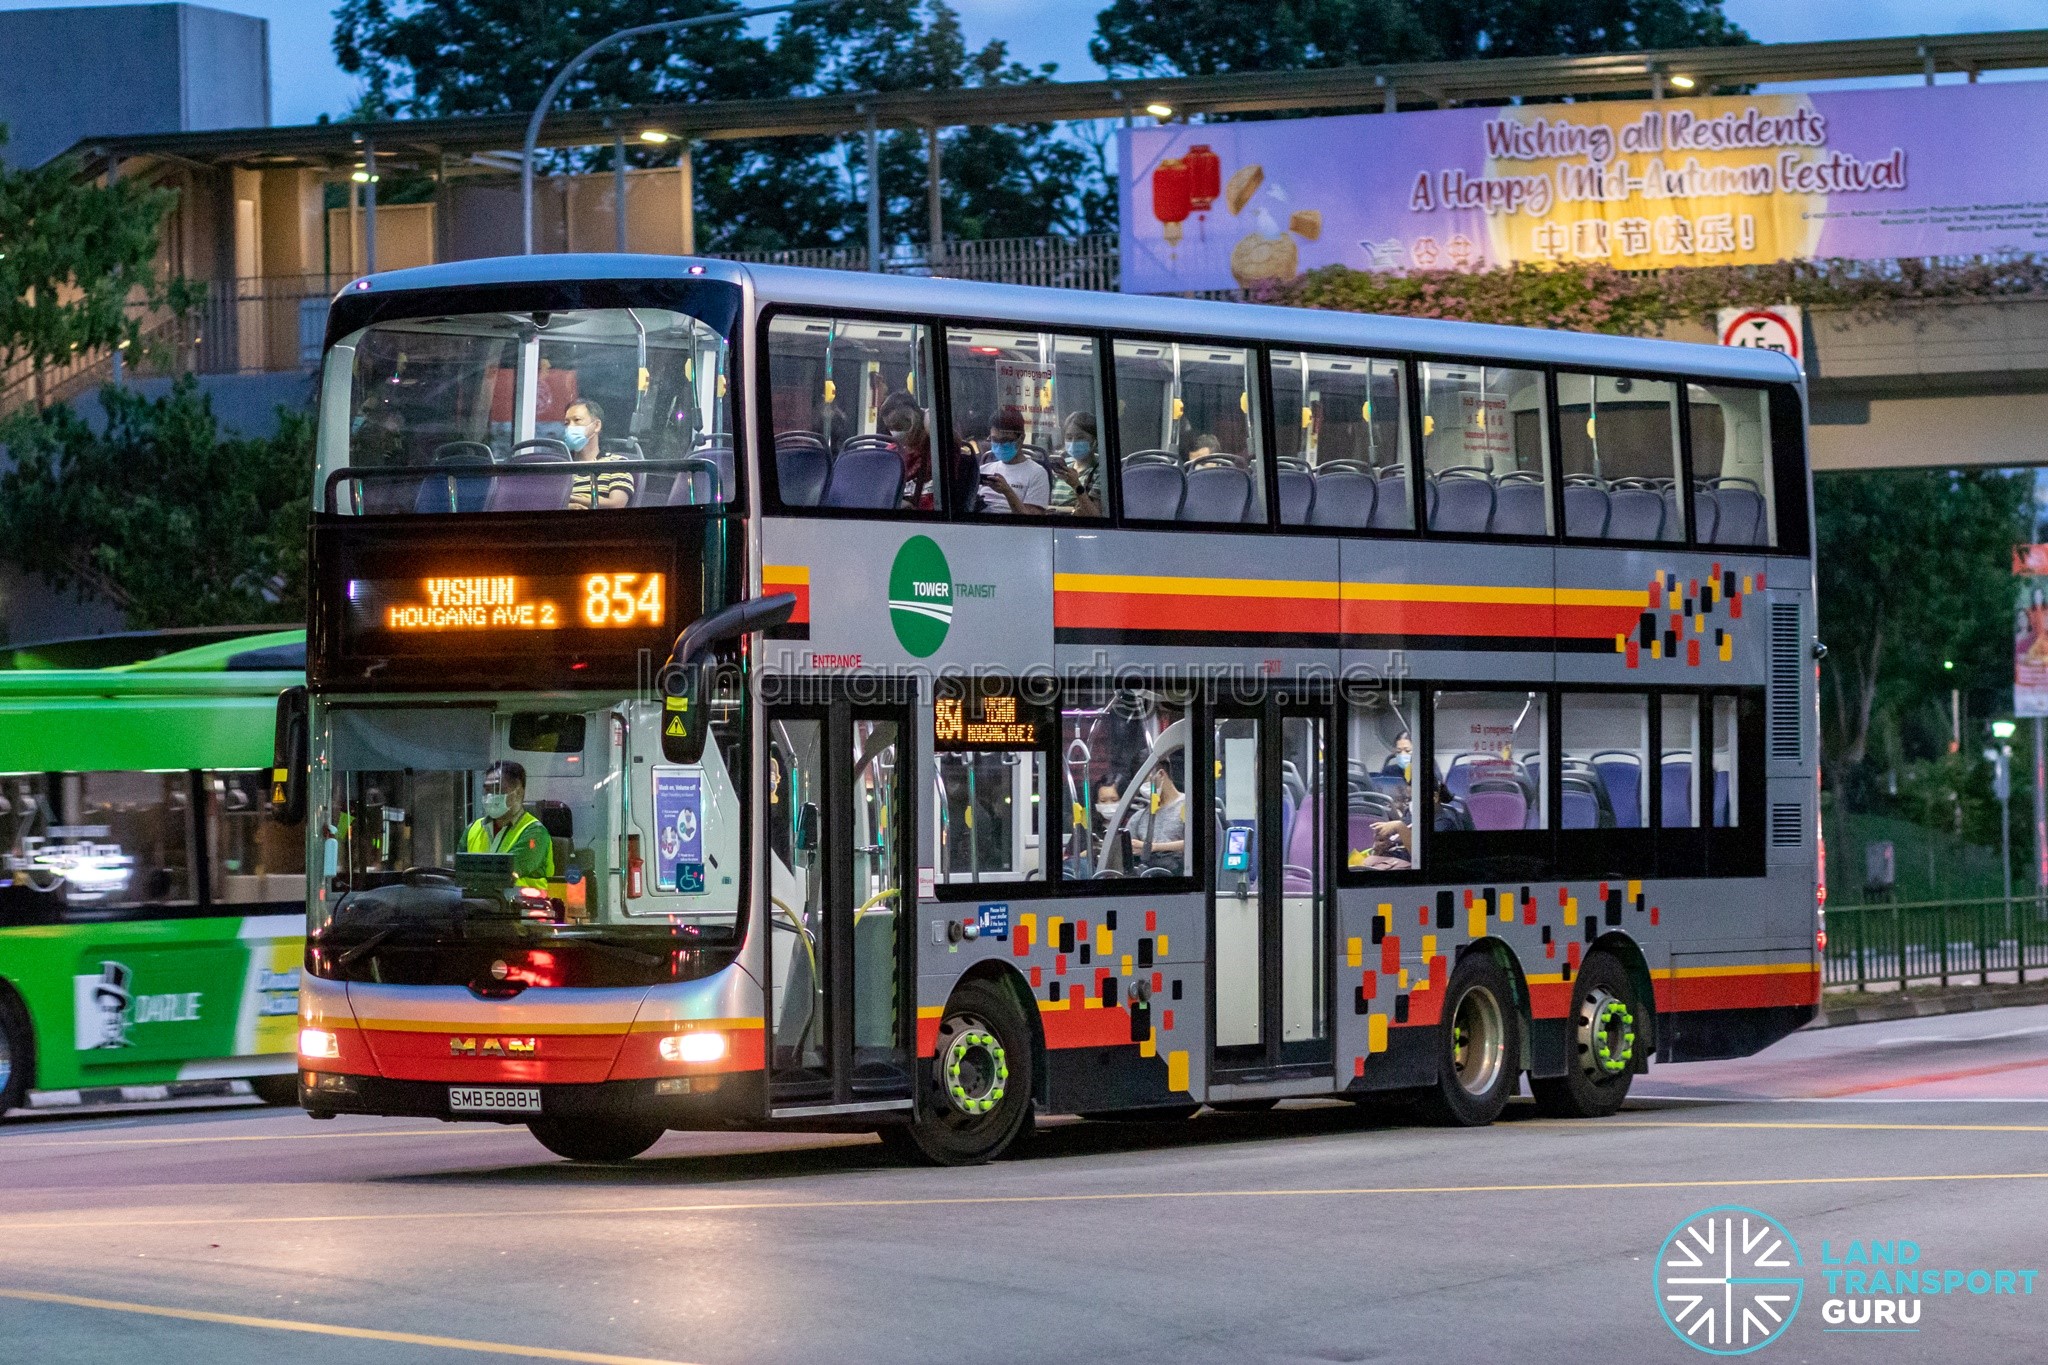 bus-854-tower-transit-man-a95-smb5888h-land-transport-guru